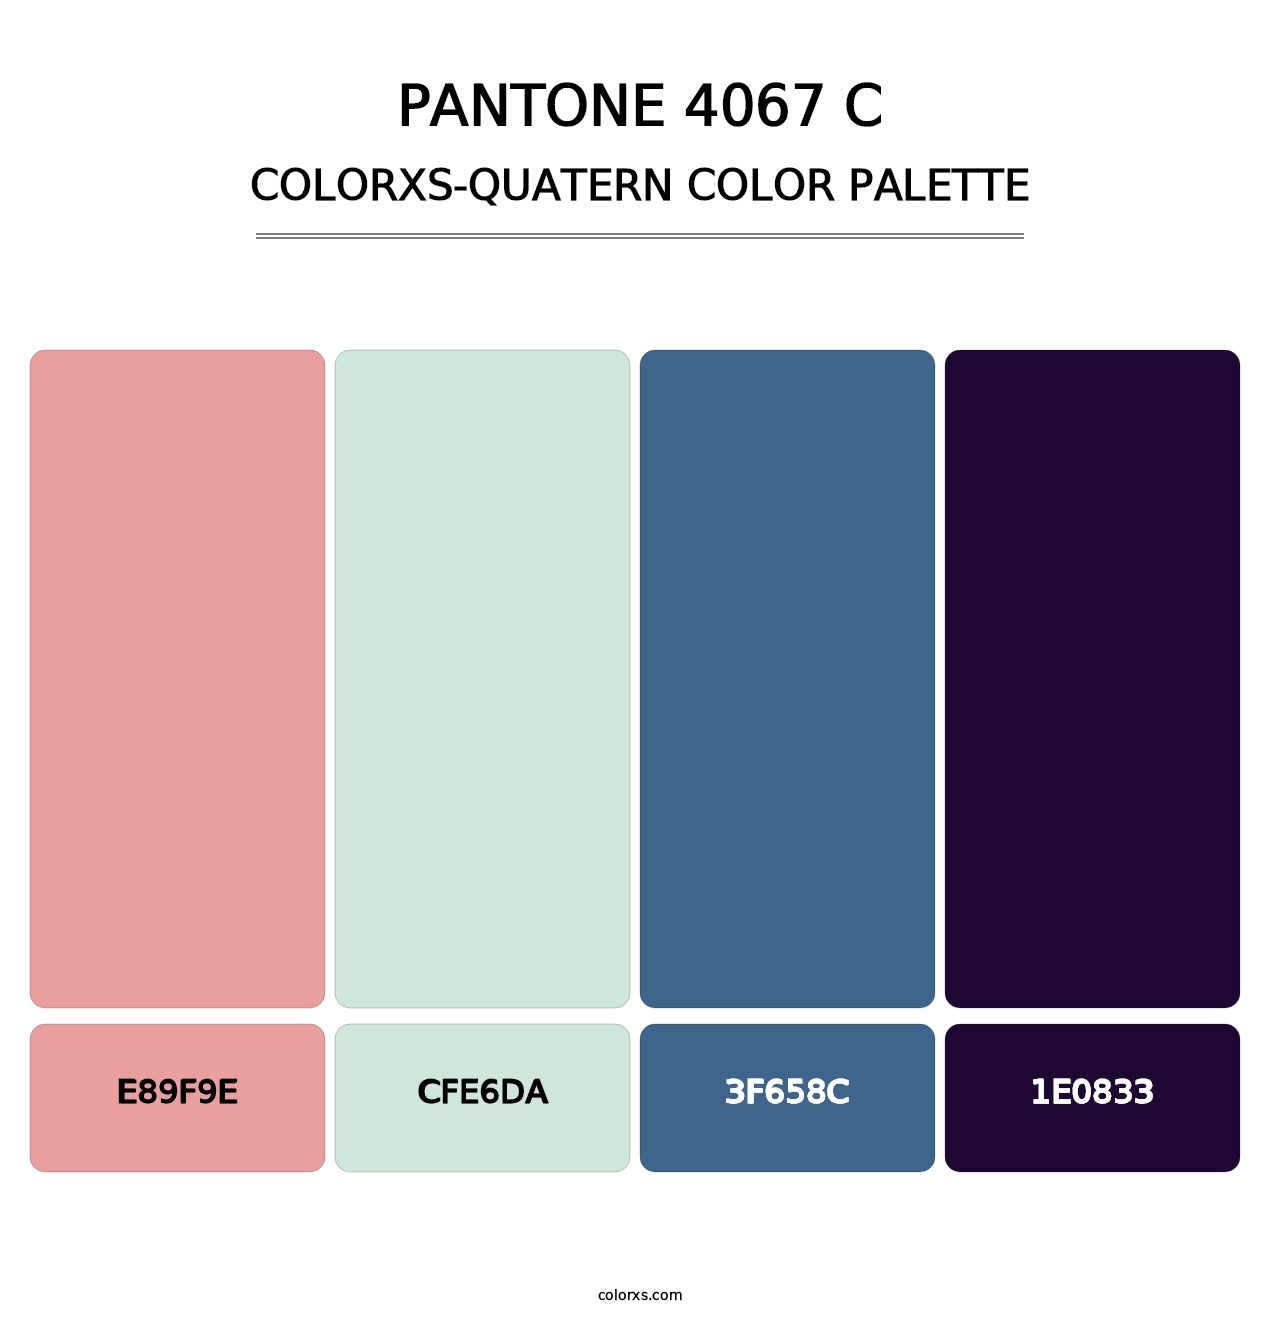 PANTONE 4067 C - Colorxs Quatern Palette